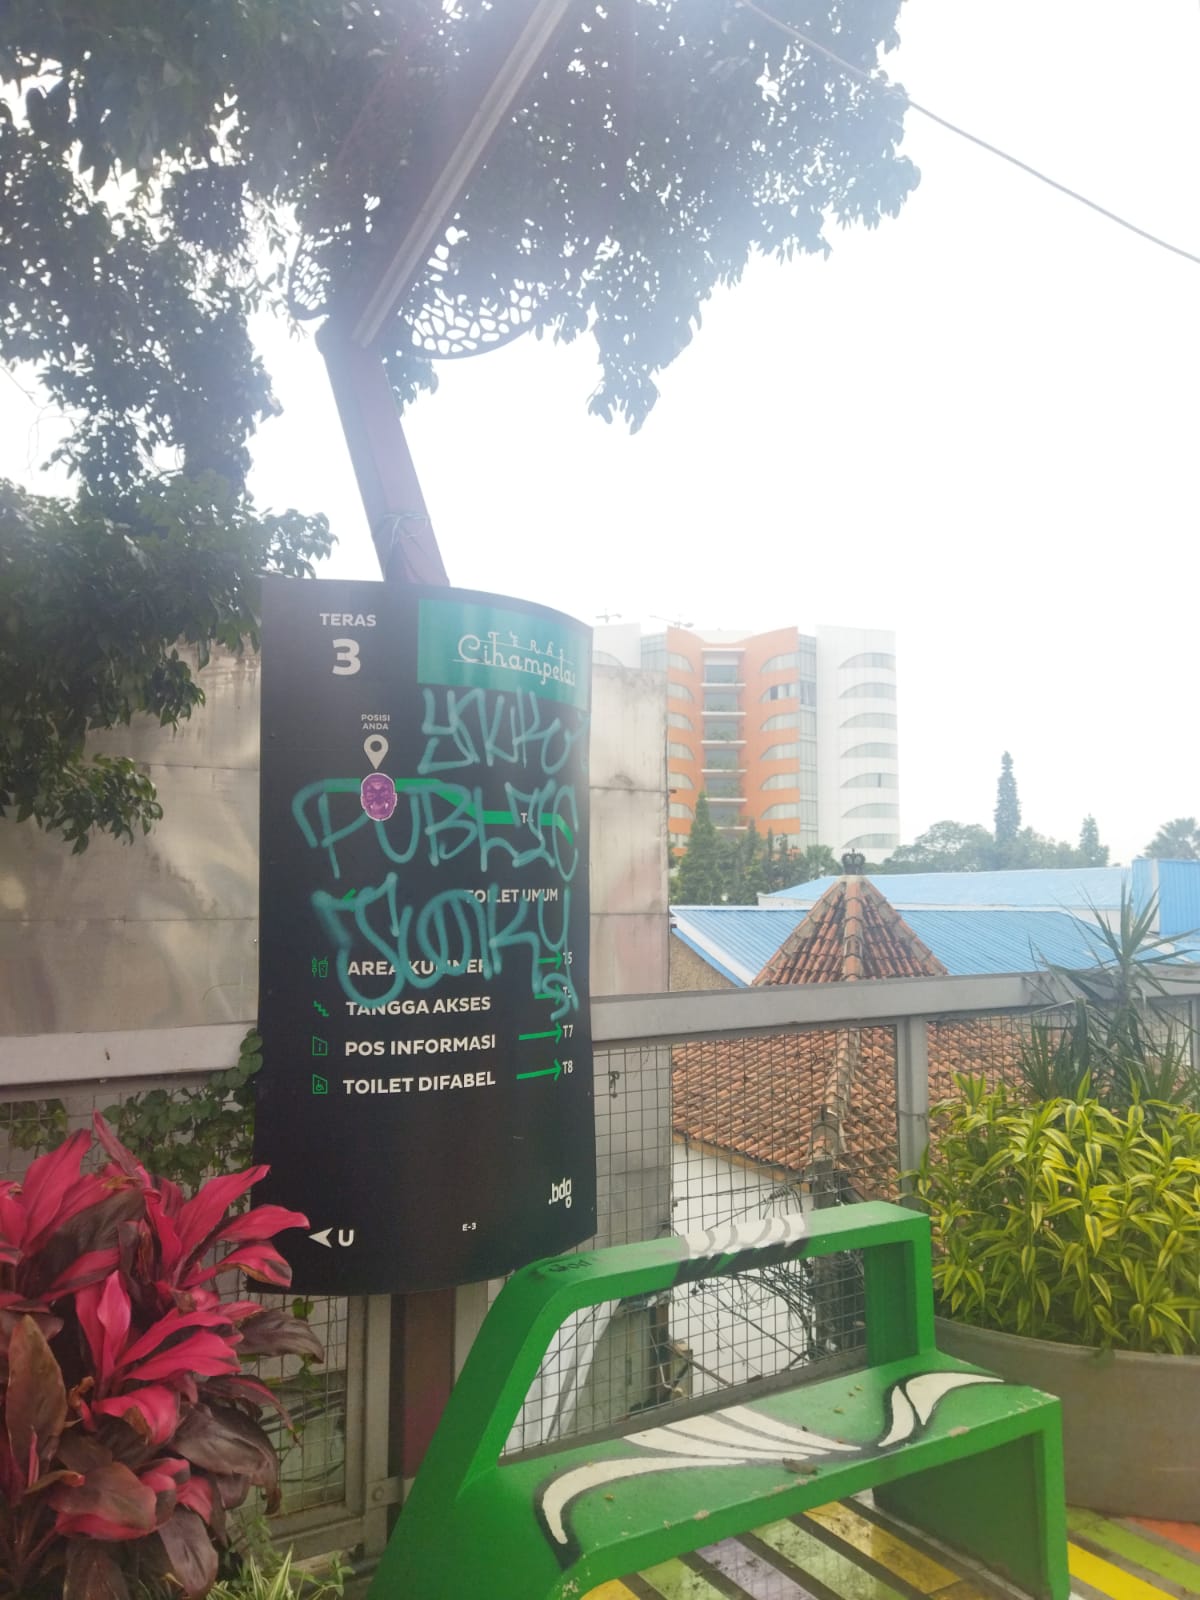 VANDALISME: Sejumlah fasilitas di Skywalk Cihampelas terkena vandalisme dan penuh dengan coretan. (Nizar/Jabar Ekspres)